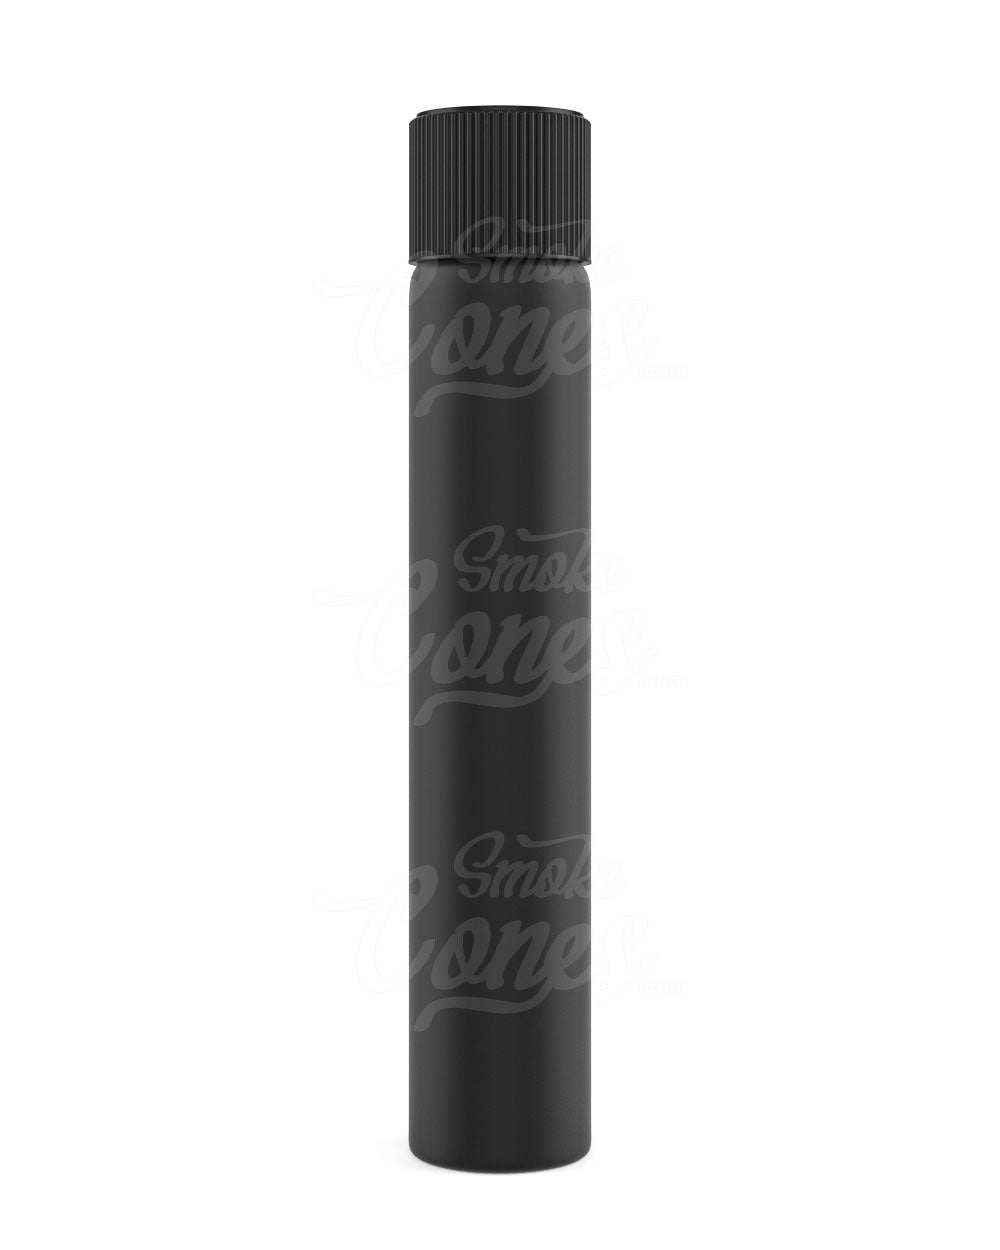 120mm King Size Matte Black Glass Pre-Roll Tubes 400/Box